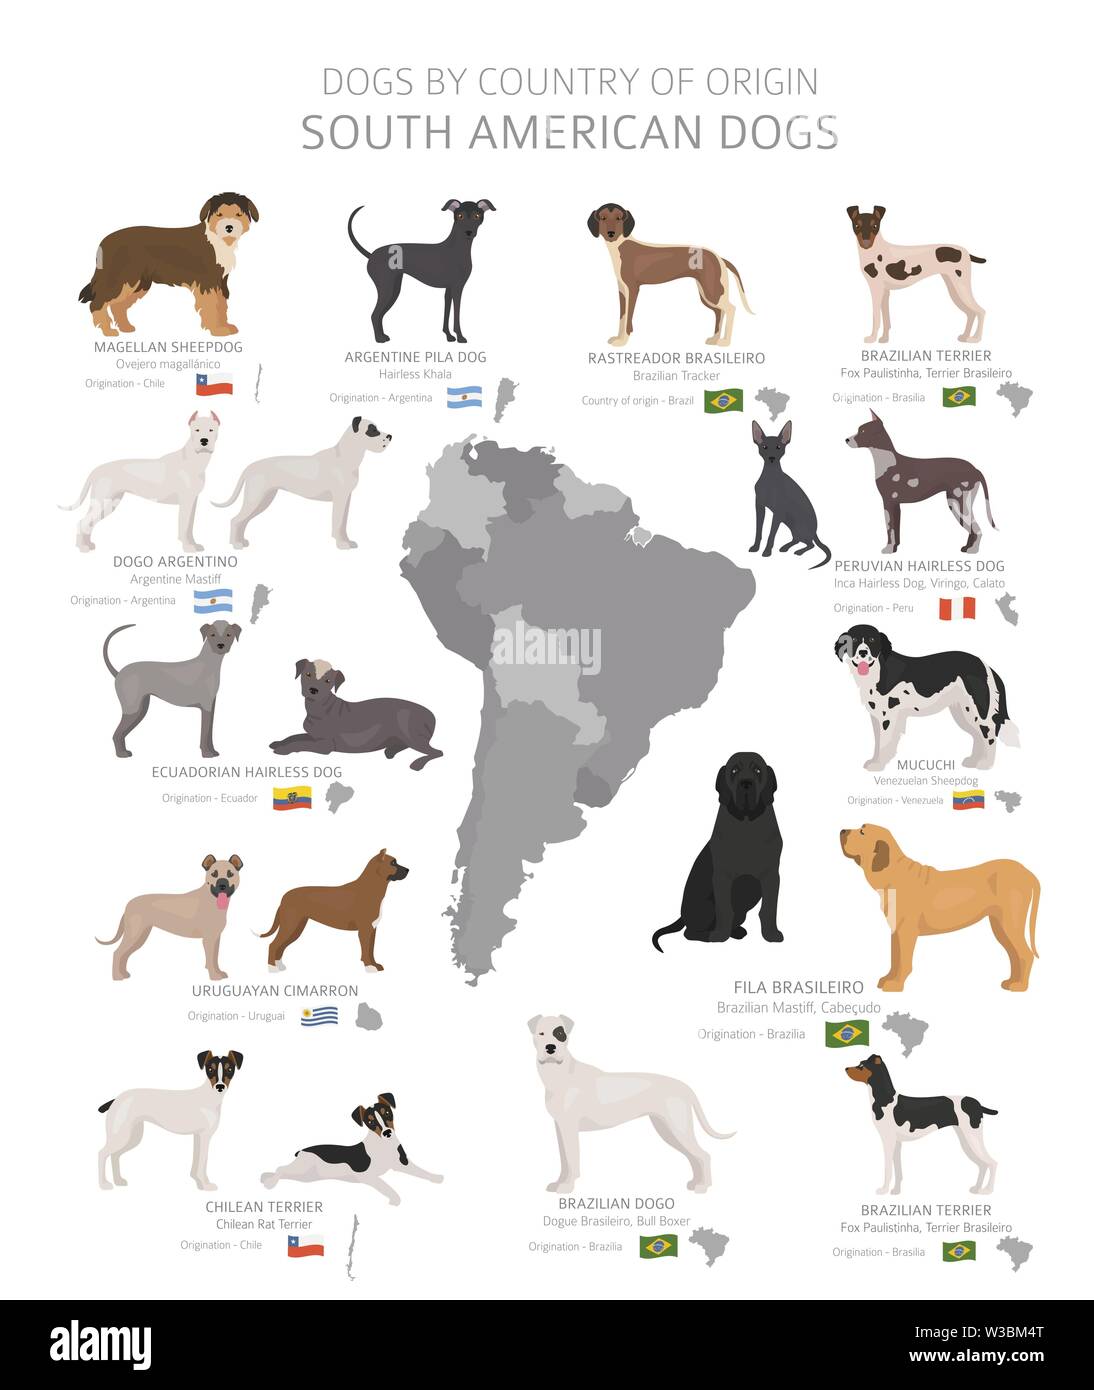 Hunde nach Herkunftsland. Südamerikanische Hunderassen. Hirten, Jagd, Hüten, Spielzeug, Arbeiten und Service Hunde eingestellt. Vector Illustration Stock Vektor